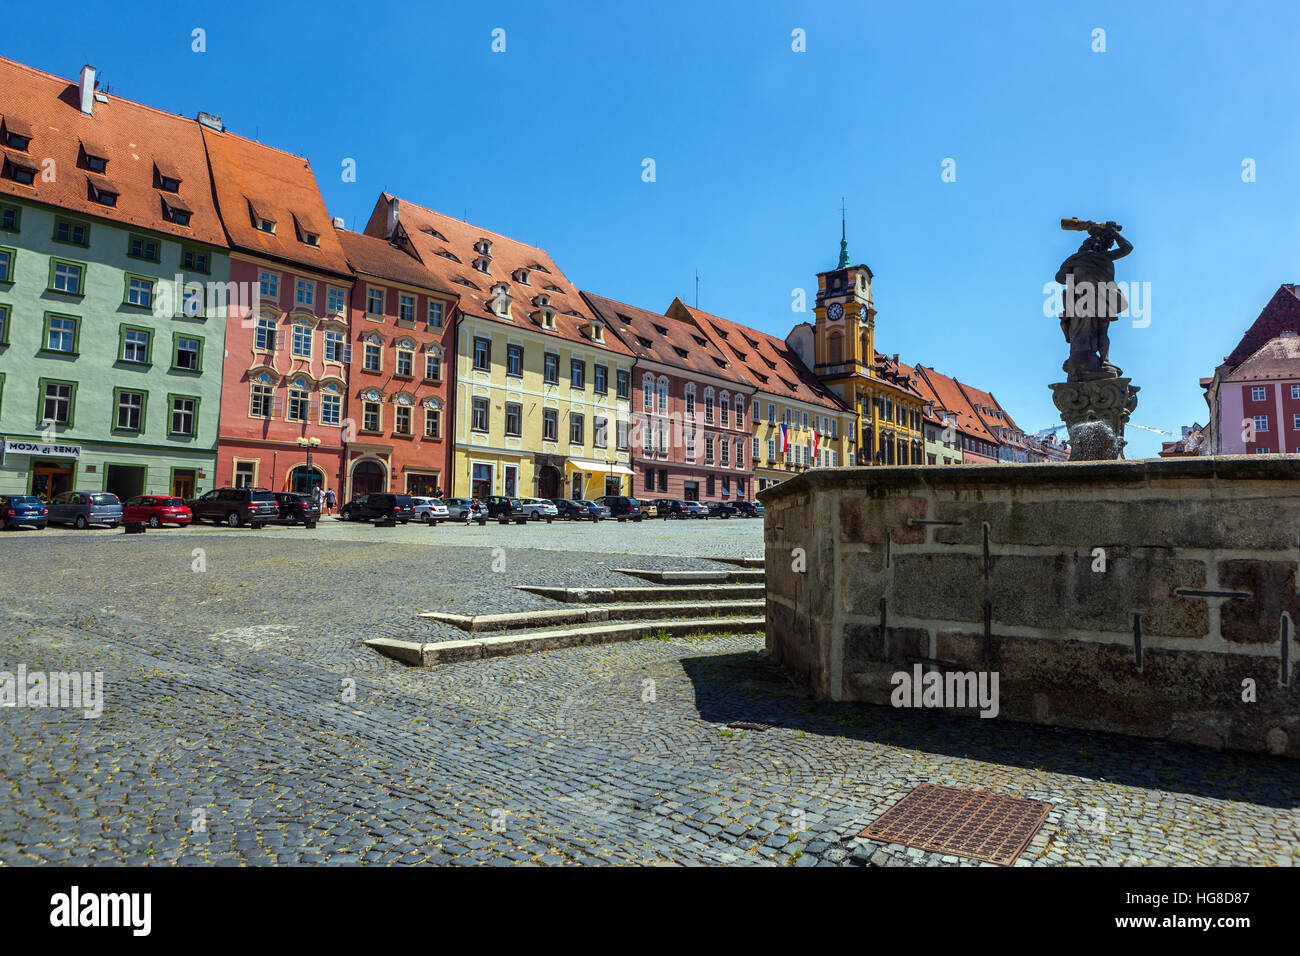 Vieille ville historique, place principale, Cheb, Bohême occidentale, République tchèque Banque D'Images